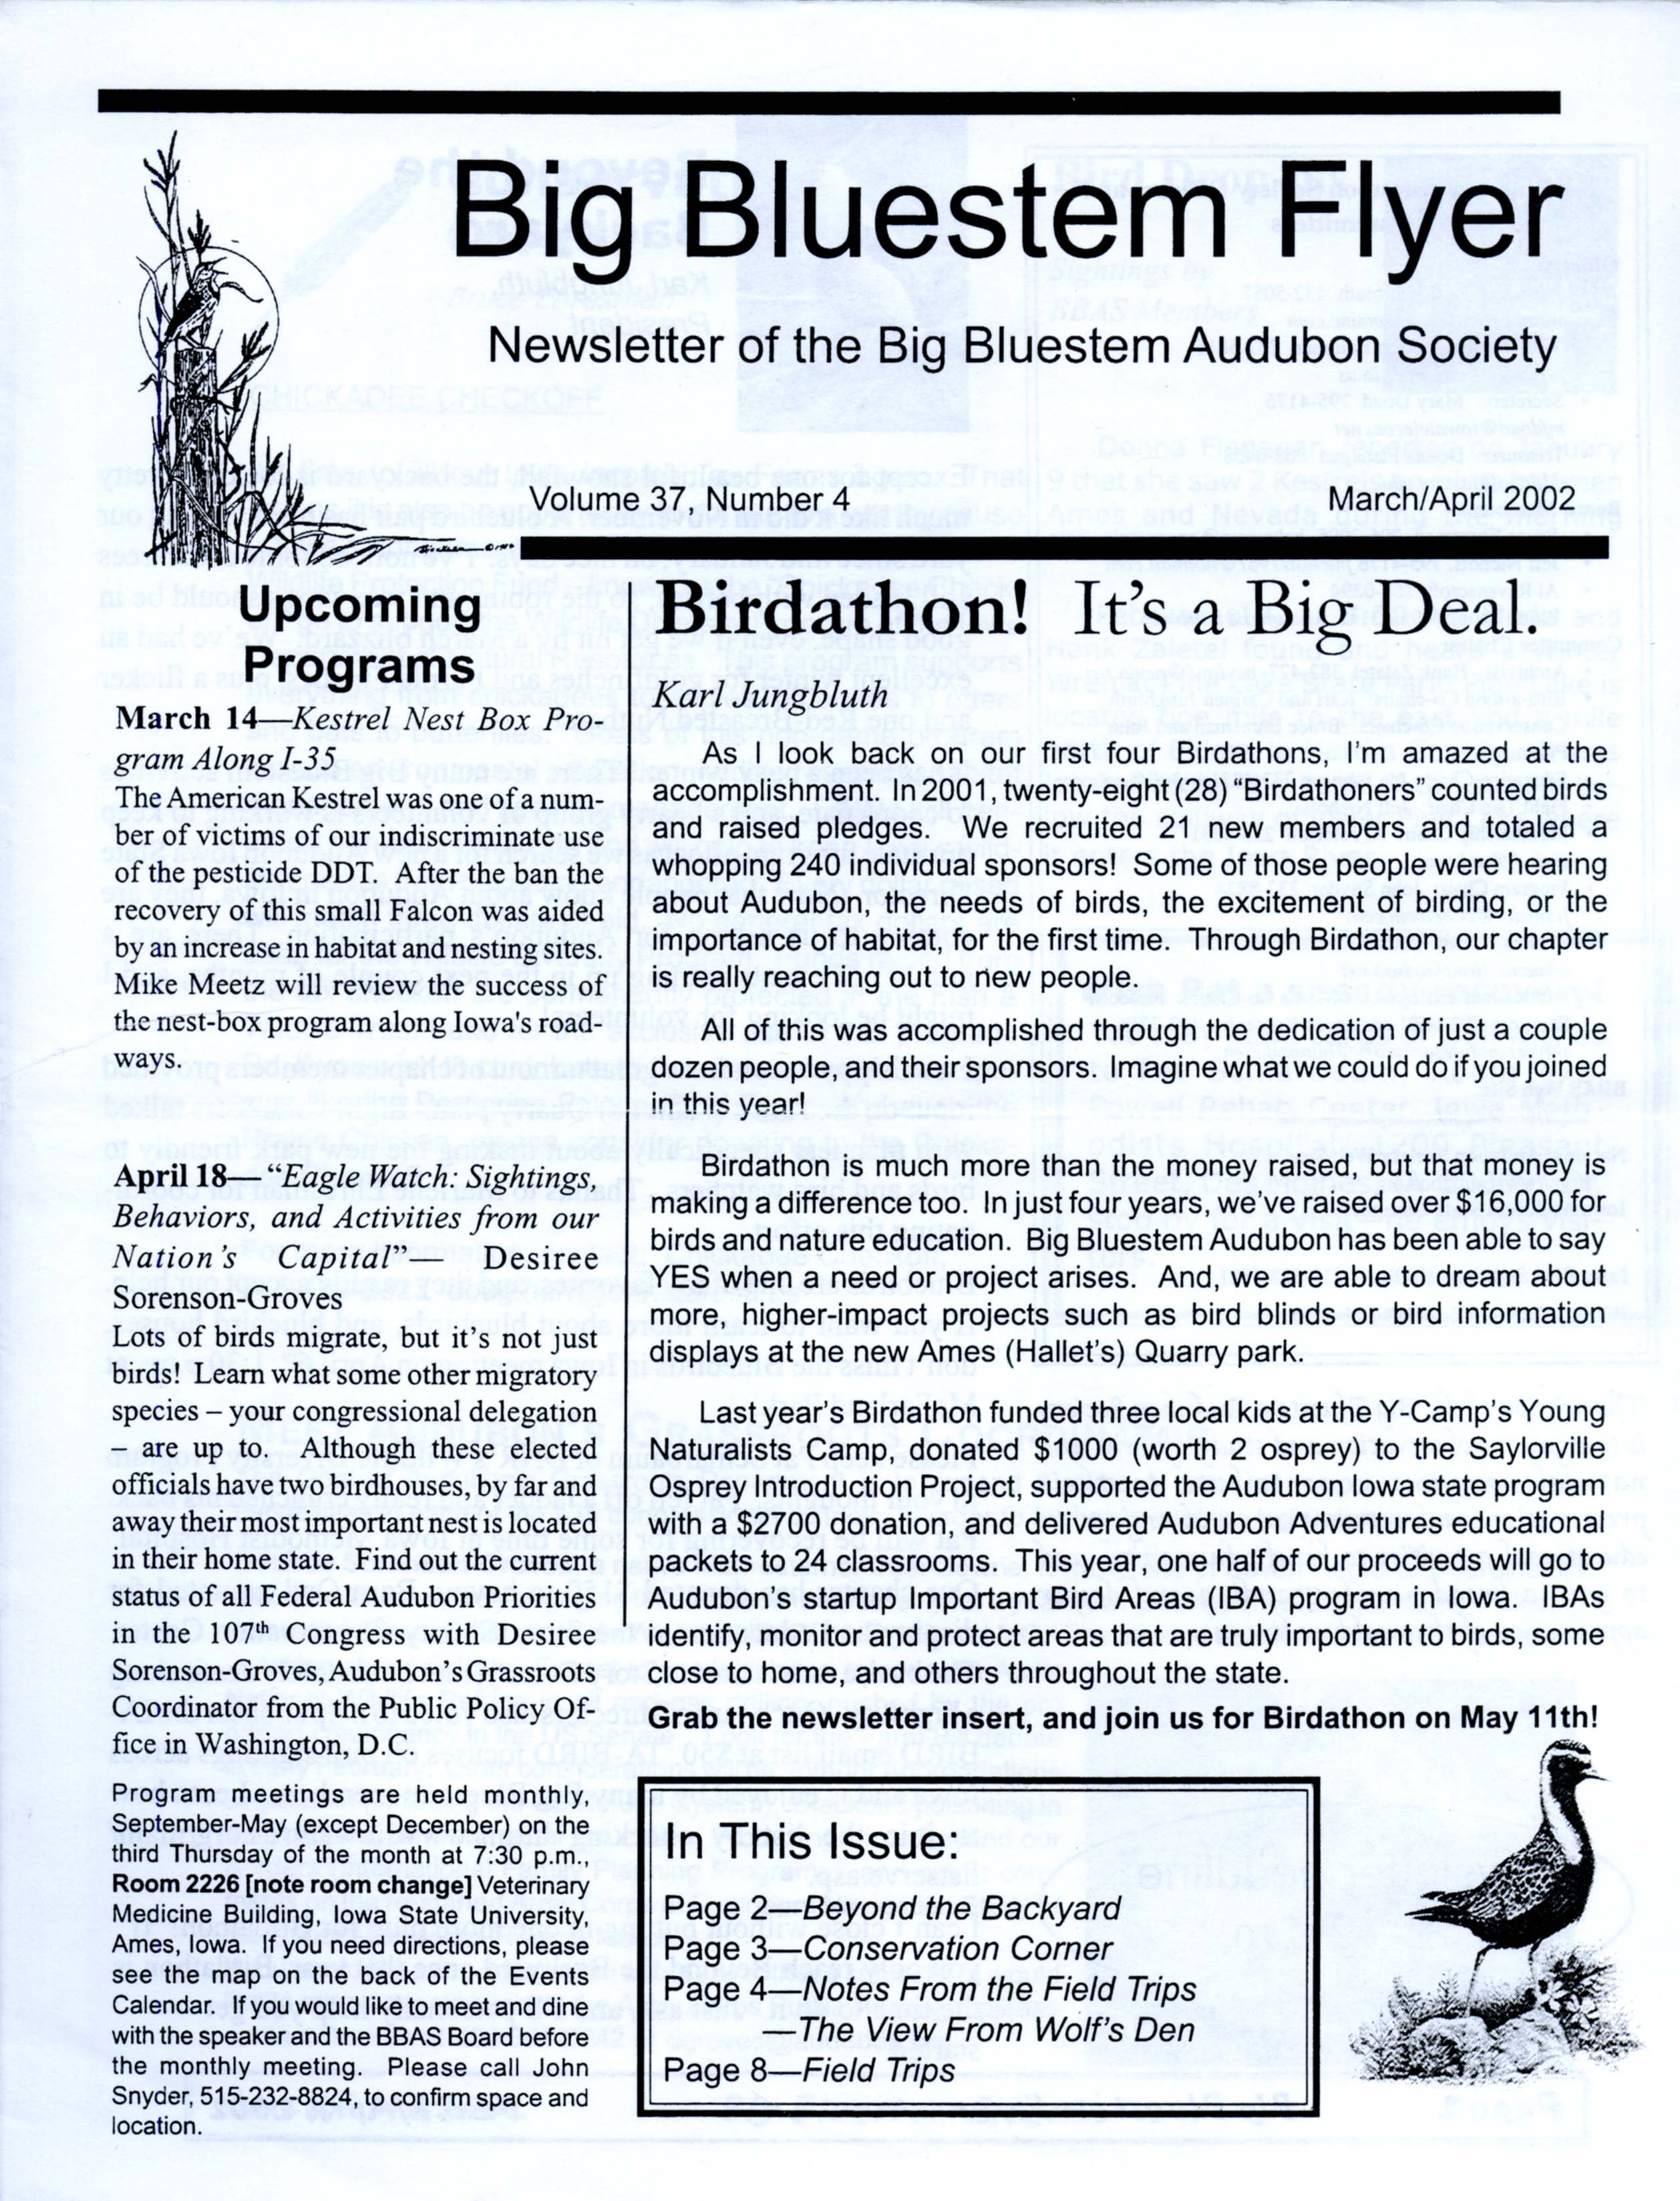 Big Bluestem Flyer, Volume 37, Number 4, March/April 2002